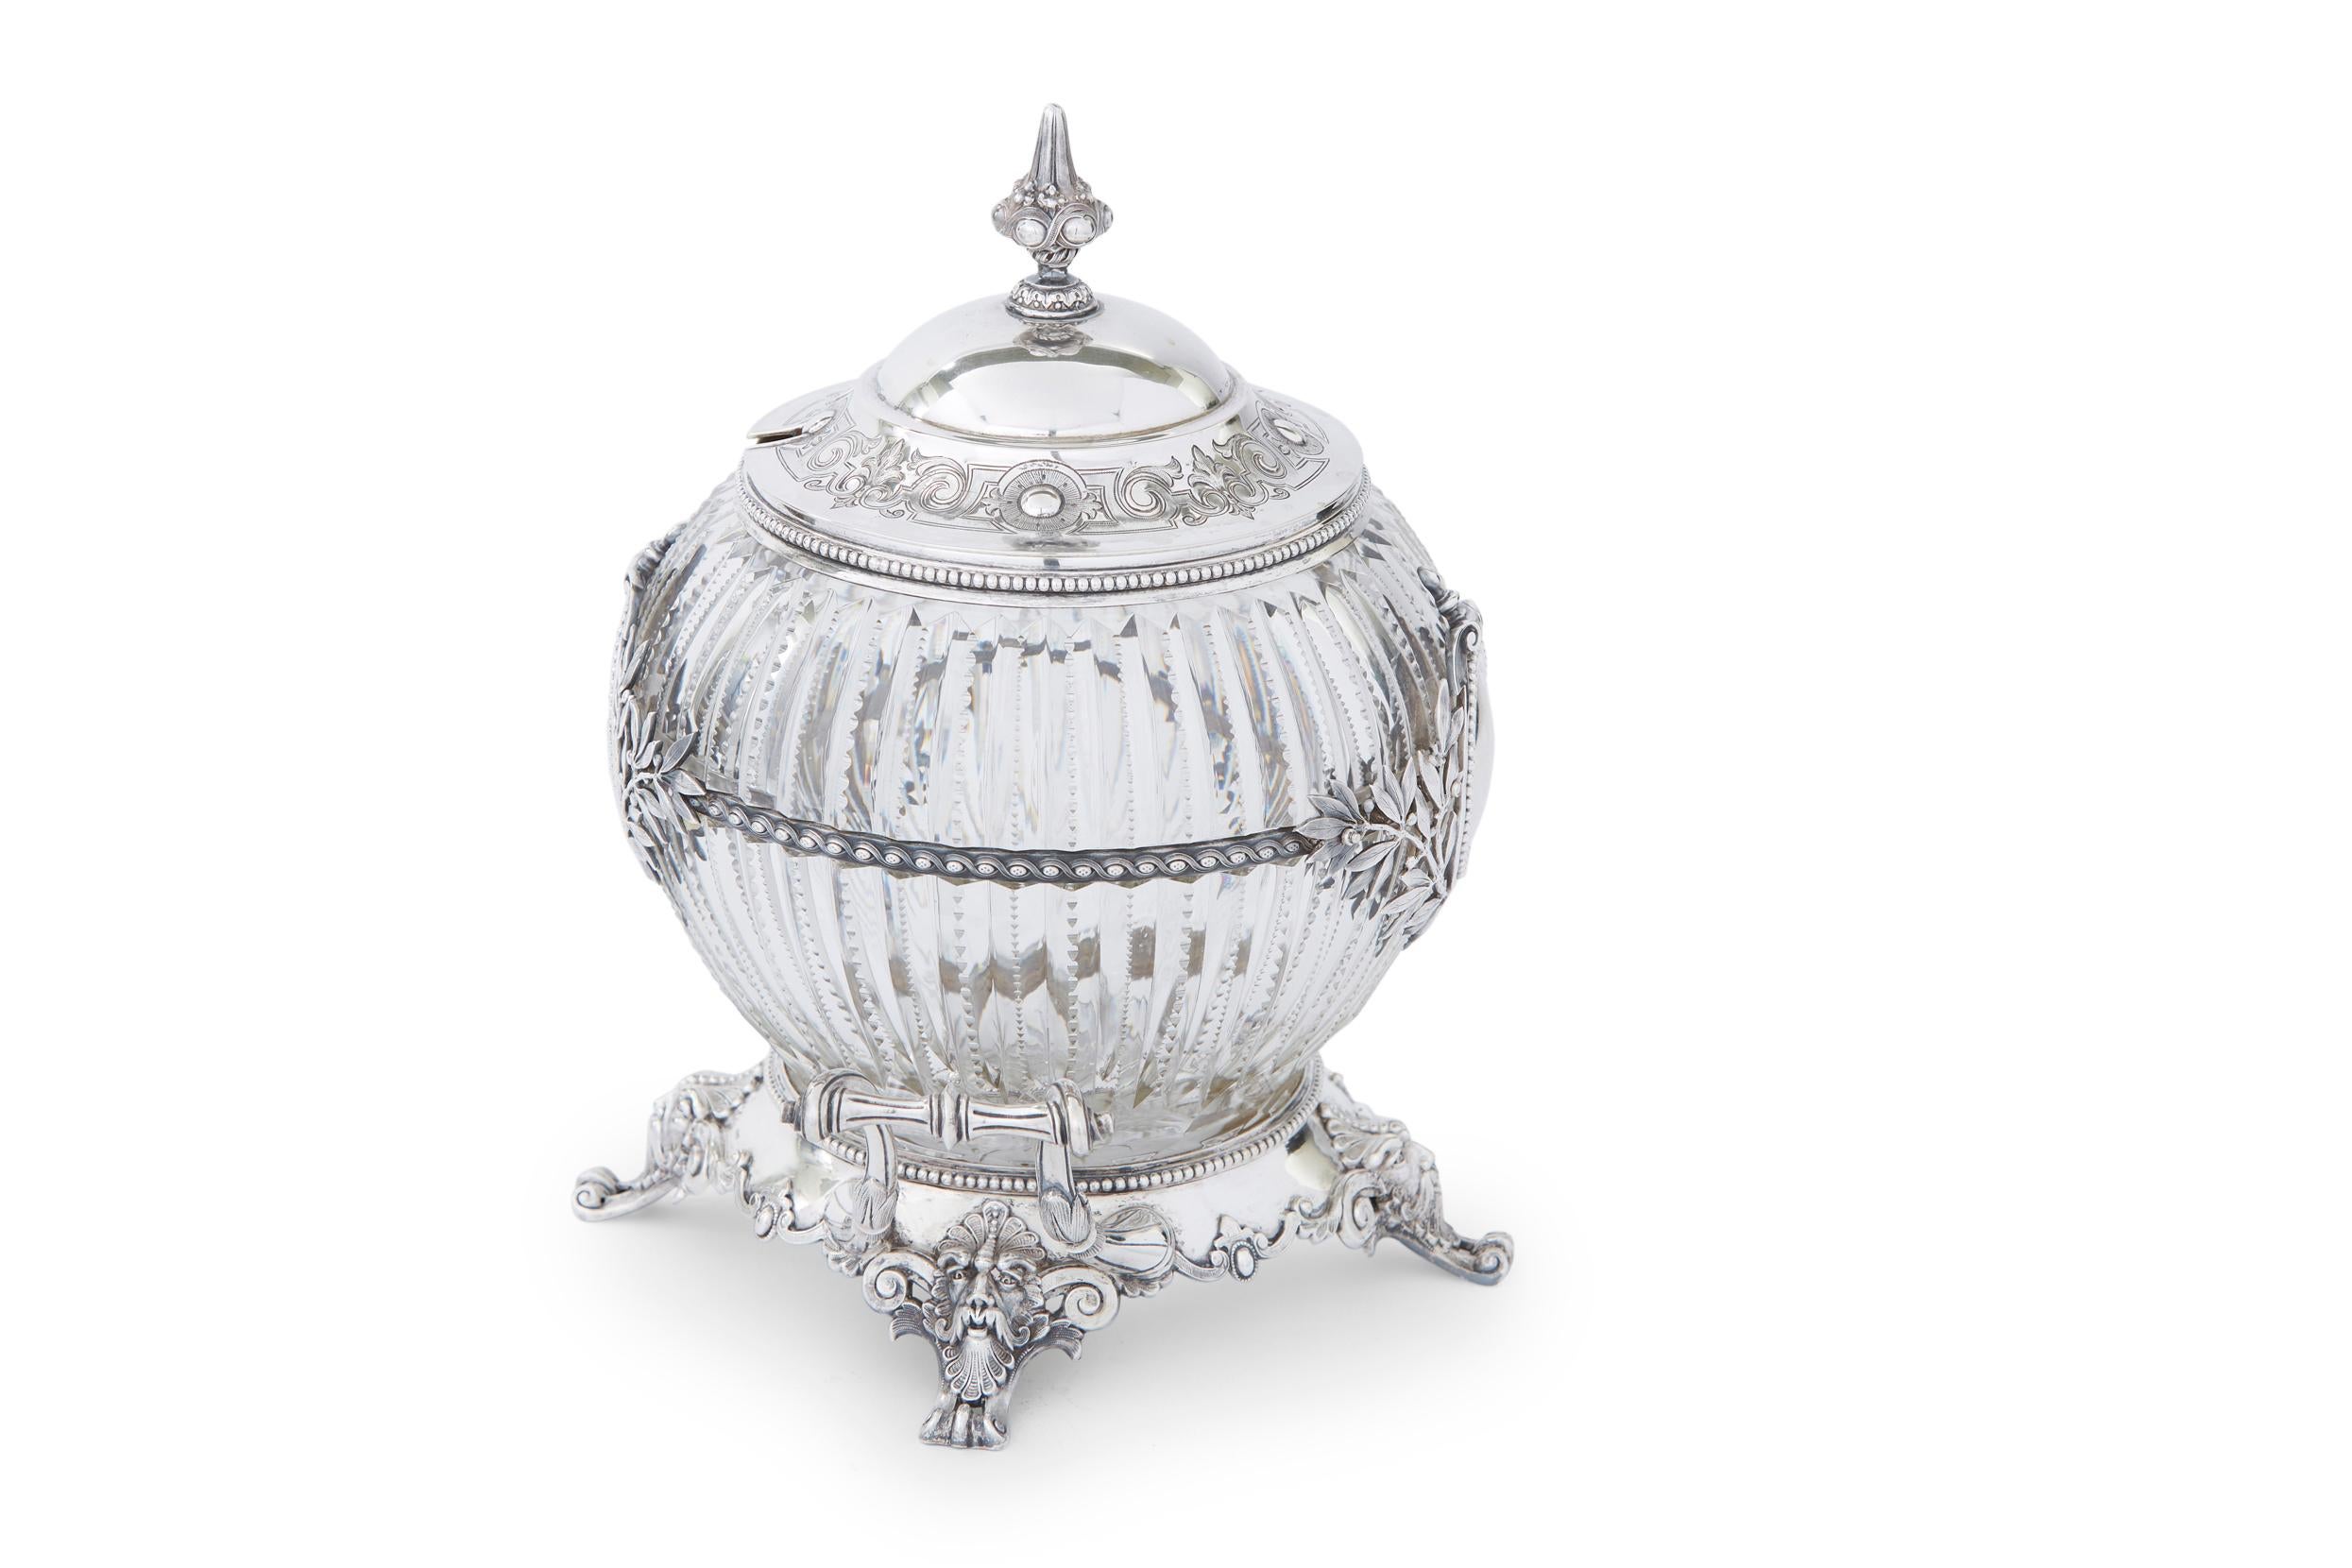 Frühe 19. Jahrhundert montiert Sterling Silber umrahmt mit abgeschrägten geätzten Kristall Barware / Geschirr fußte Server mit seitlichen Griffen und äußeren Design-Details. Das bedeckte Oberteil hat eine goldfarbene Innenseite mit äußeren